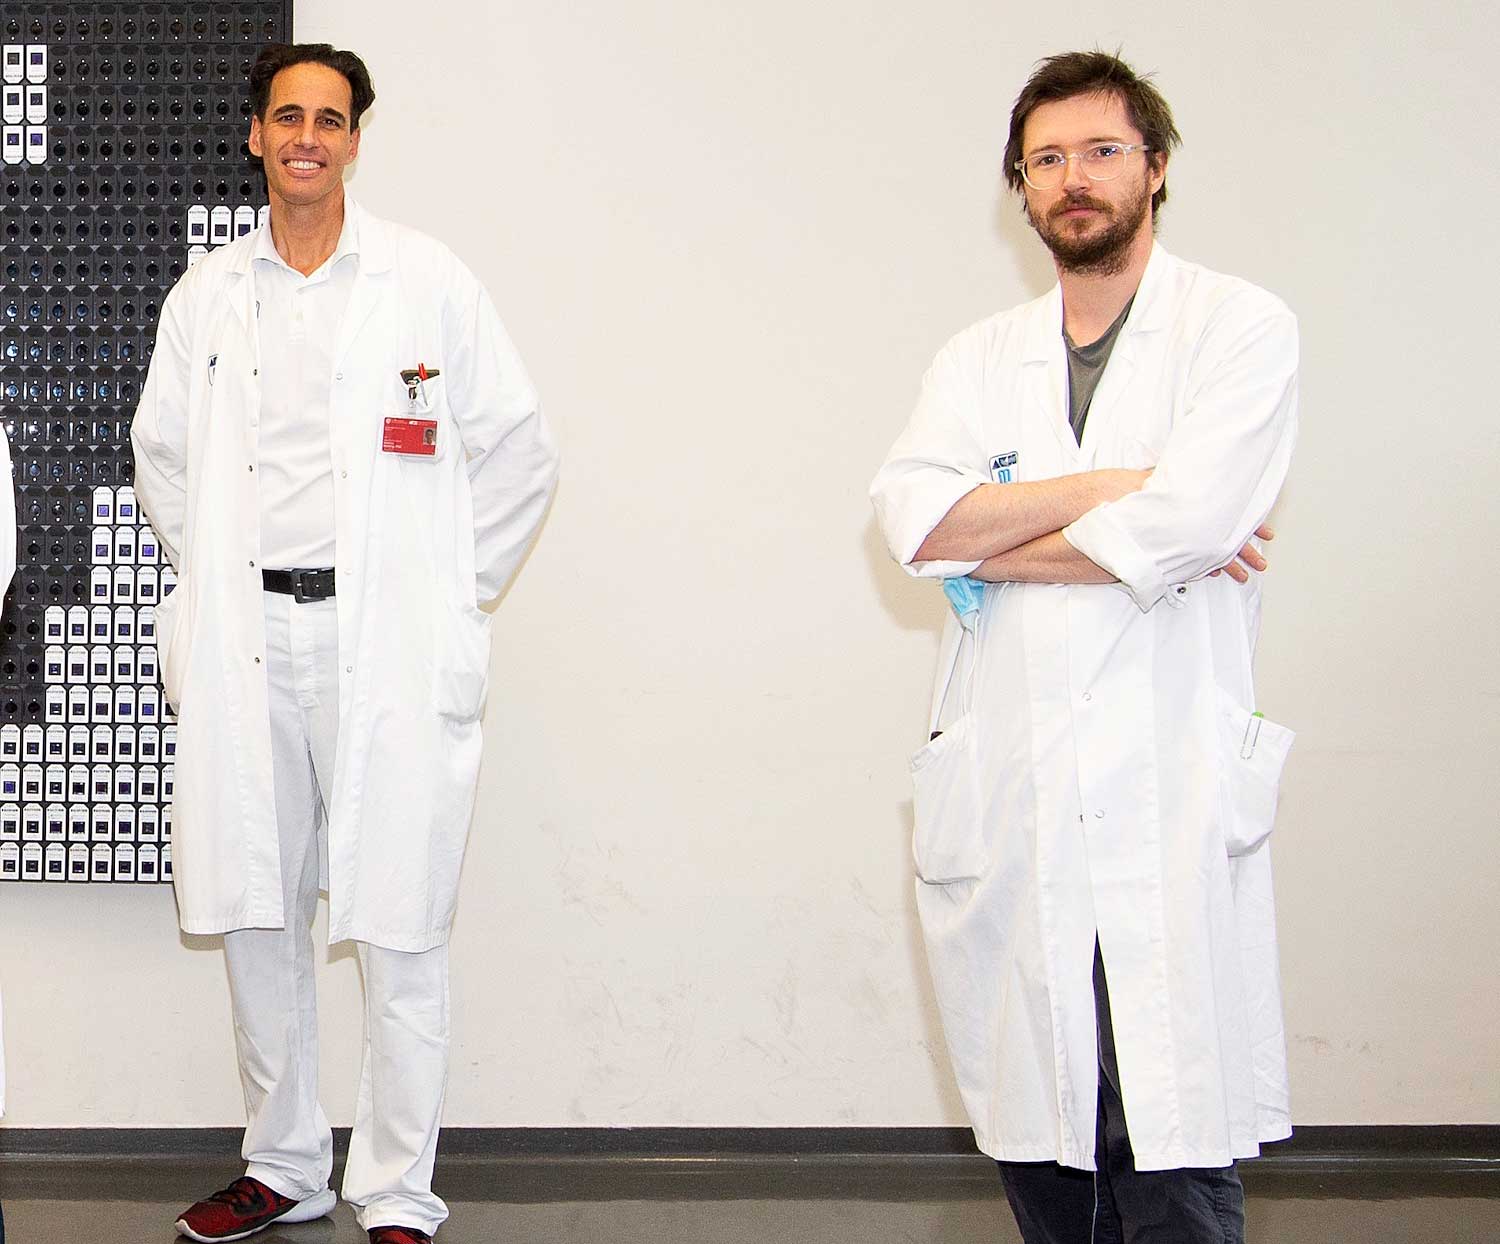 Eine Forschungsgruppe um die Mediziner Manfred Hecking (links) und Roman Reindl-Schwaighofer hat die Zusammenhänge von Coronavirusinfektionen und Blutdruck untersucht und dabei ermutigende Erkenntnisse gewonnen. (Foto: Luiza Puiu/FWF)